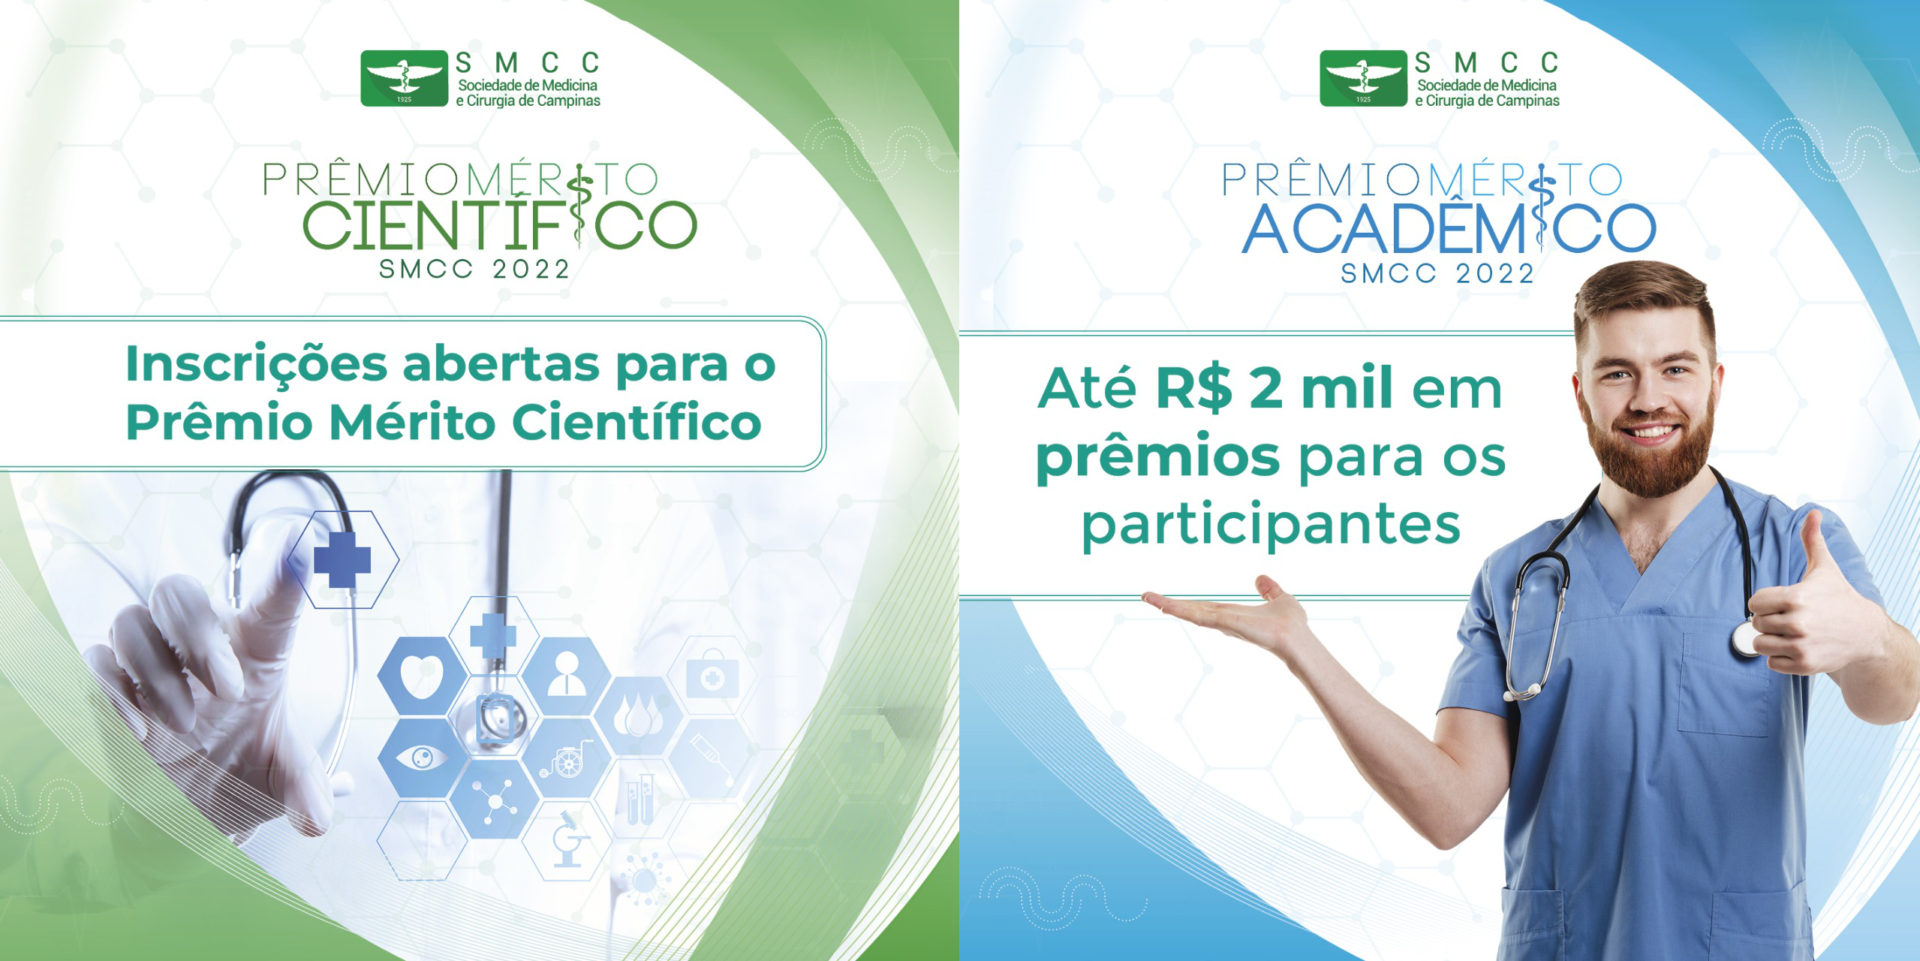 Prêmios Mérito Científico e Mérito Acadêmico vão distribuir R$ 8 mil a vencedores